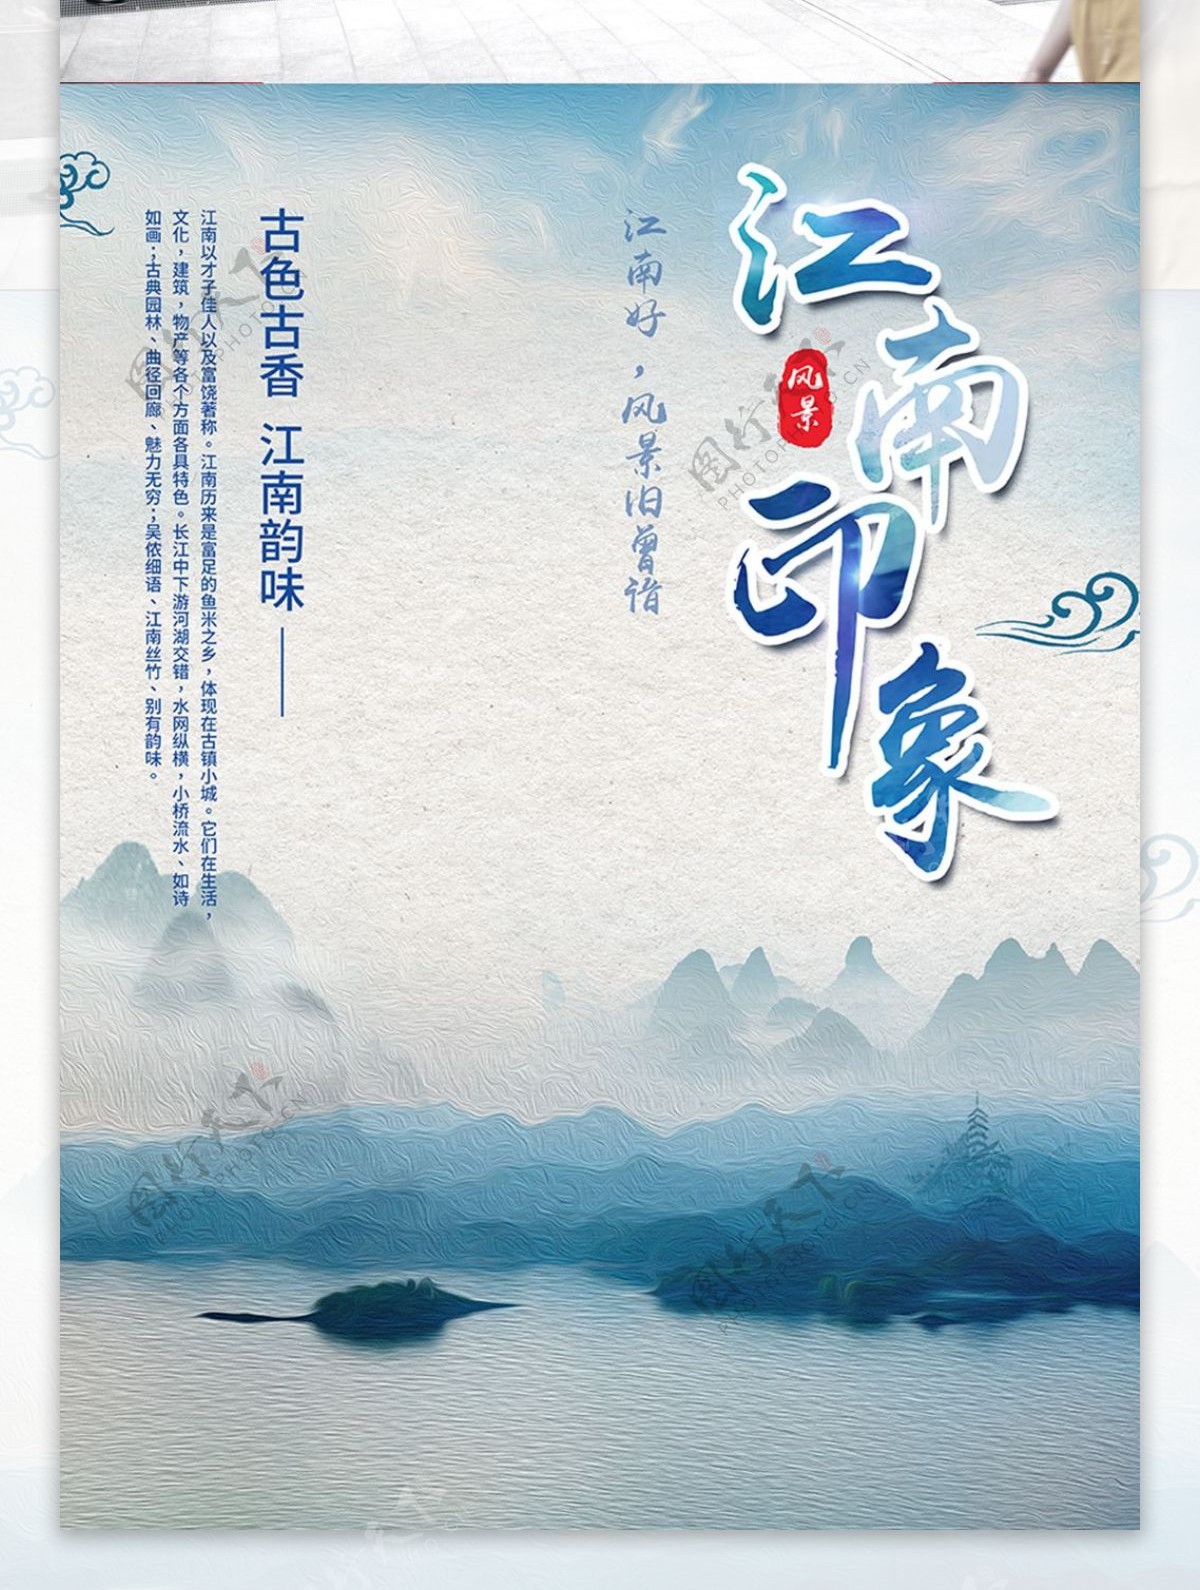 简约水墨彩绘山水风景江南旅游宣传海报